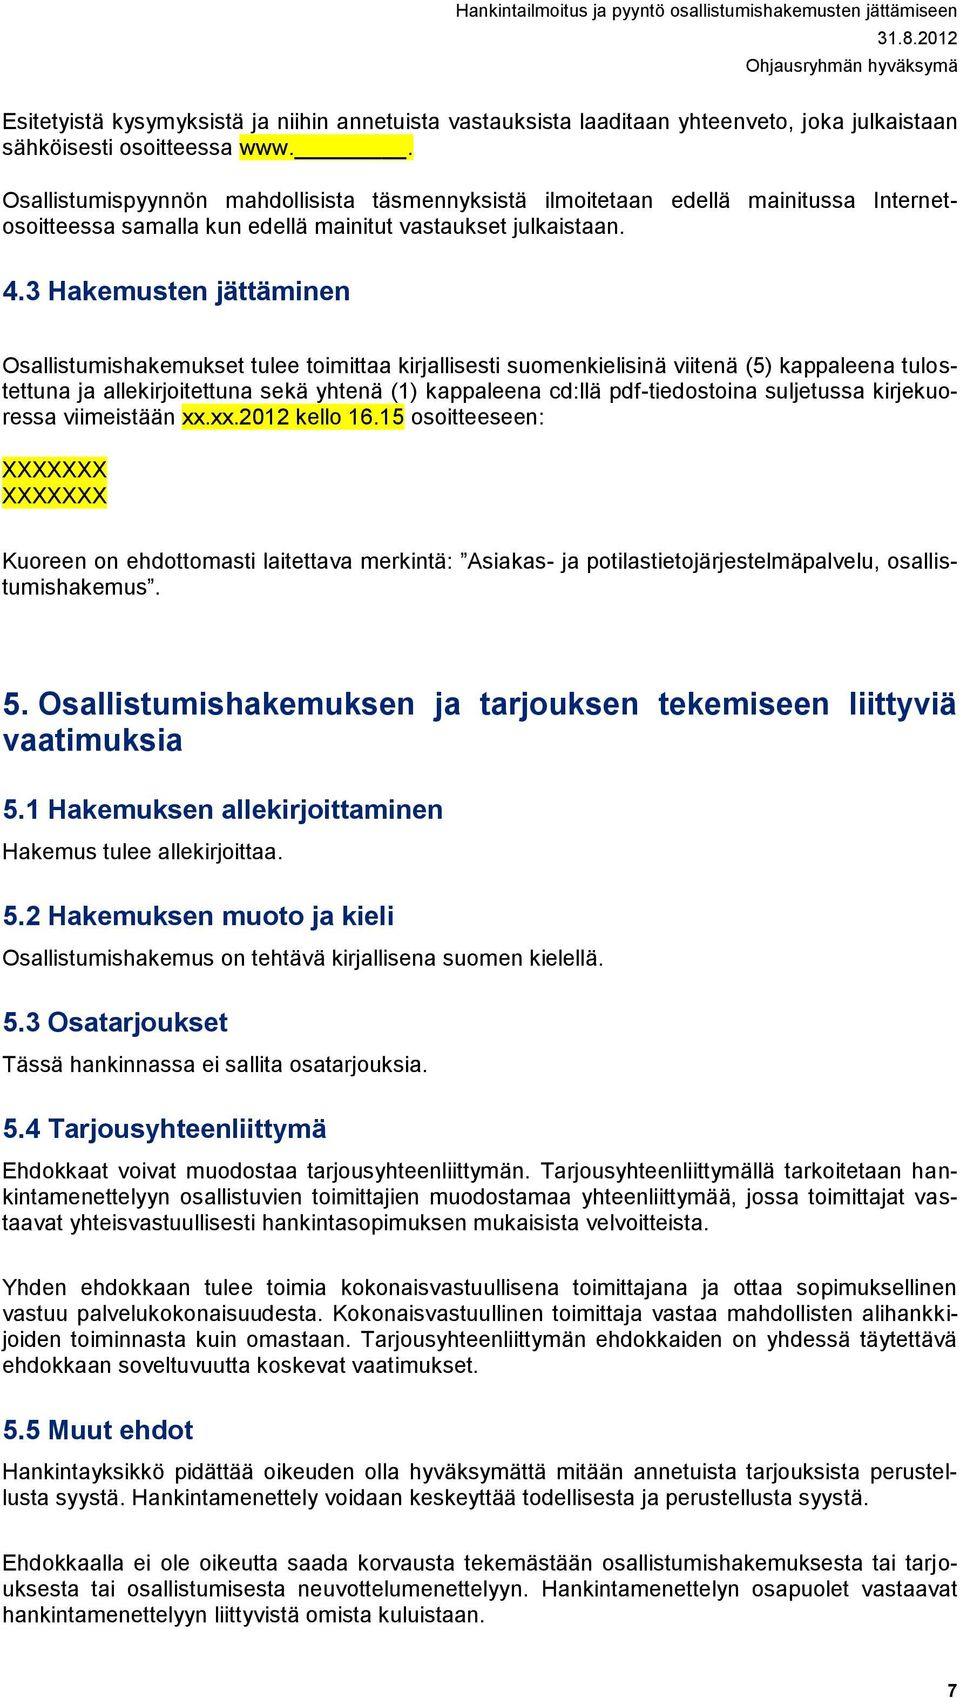 3 Hakemusten jättäminen Osallistumishakemukset tulee toimittaa kirjallisesti suomenkielisinä viitenä (5) kappaleena tulostettuna ja allekirjoitettuna sekä yhtenä (1) kappaleena cd:llä pdf-tiedostoina